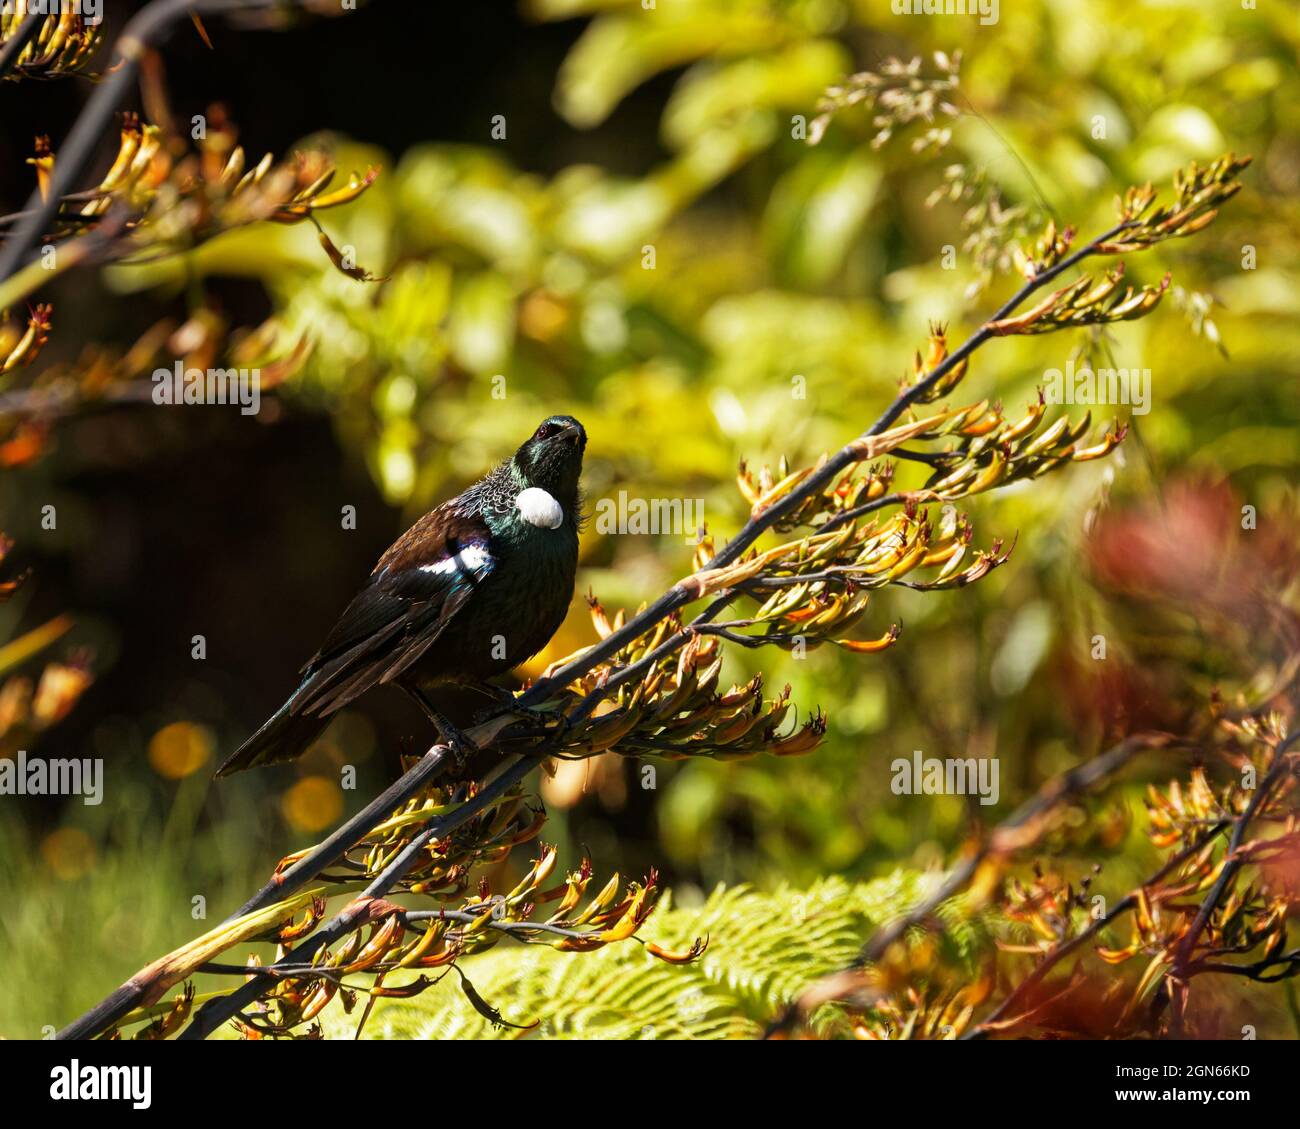 TUI, endemischer Singvögel Neuseelands, auf einer Flachspflanze, die auf die Kamera schaut Stockfoto